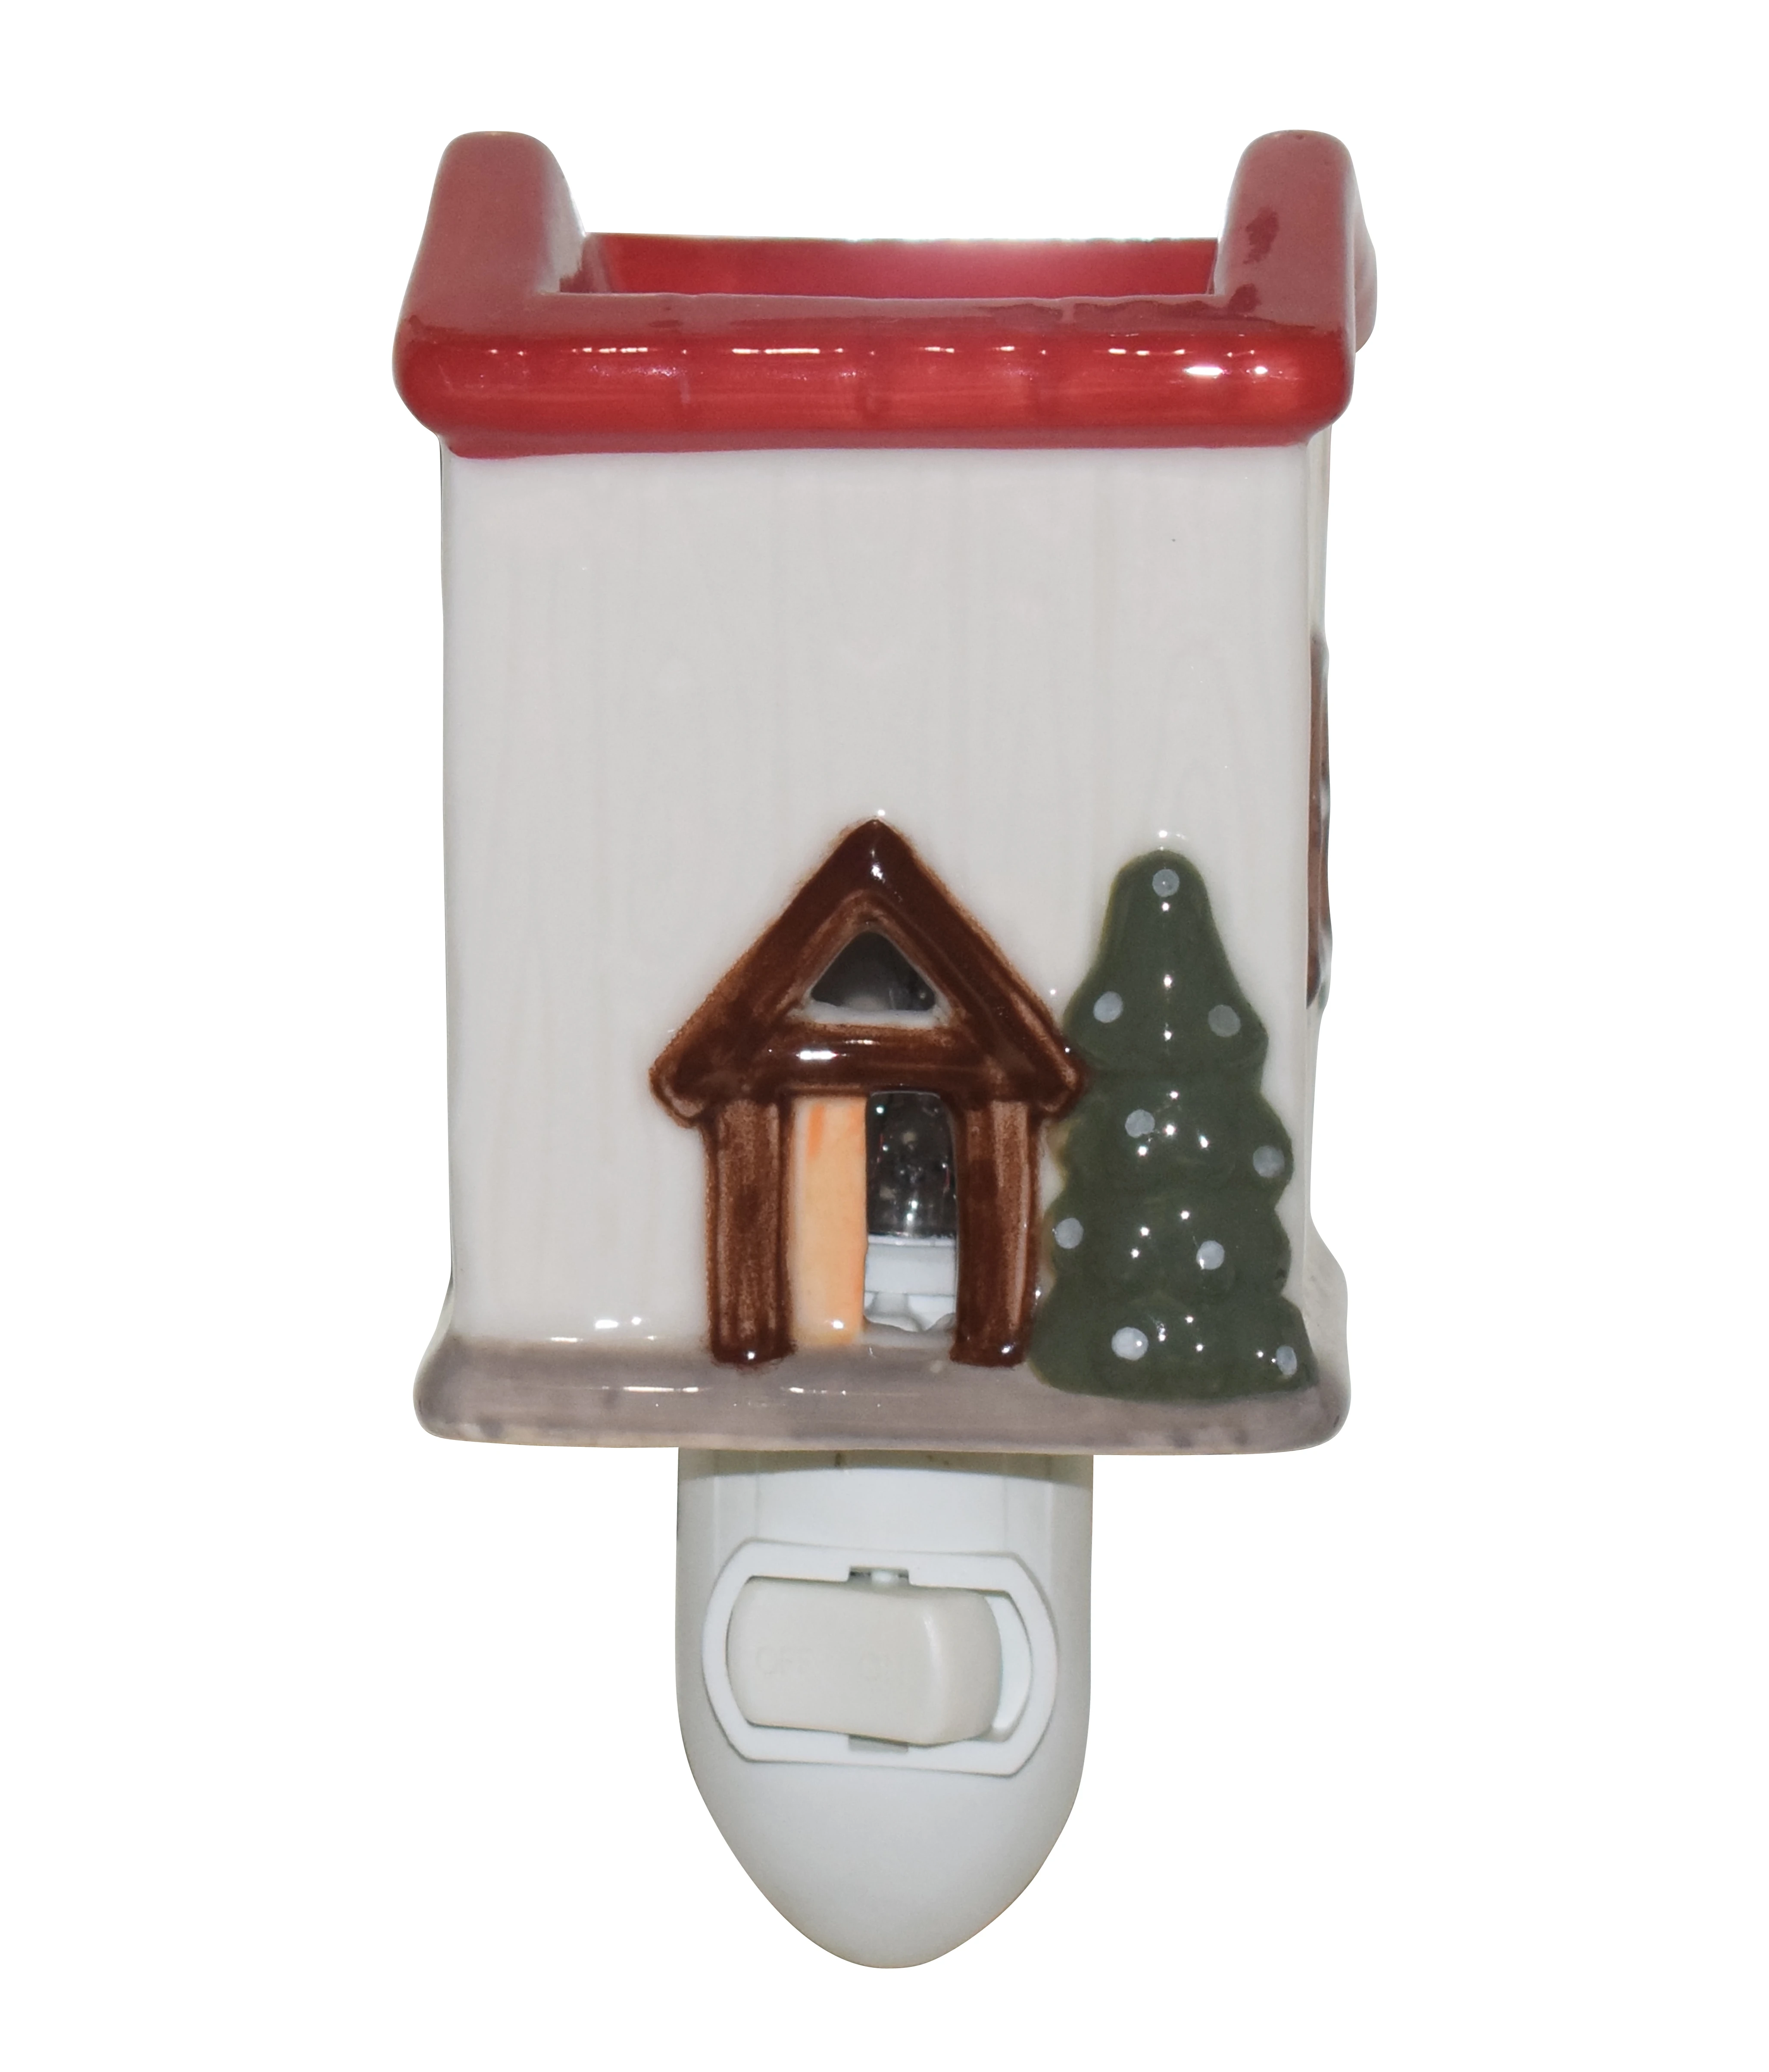 Christmas house puggable wax warmer night lamp ceramic pocelain fragrance oil burner